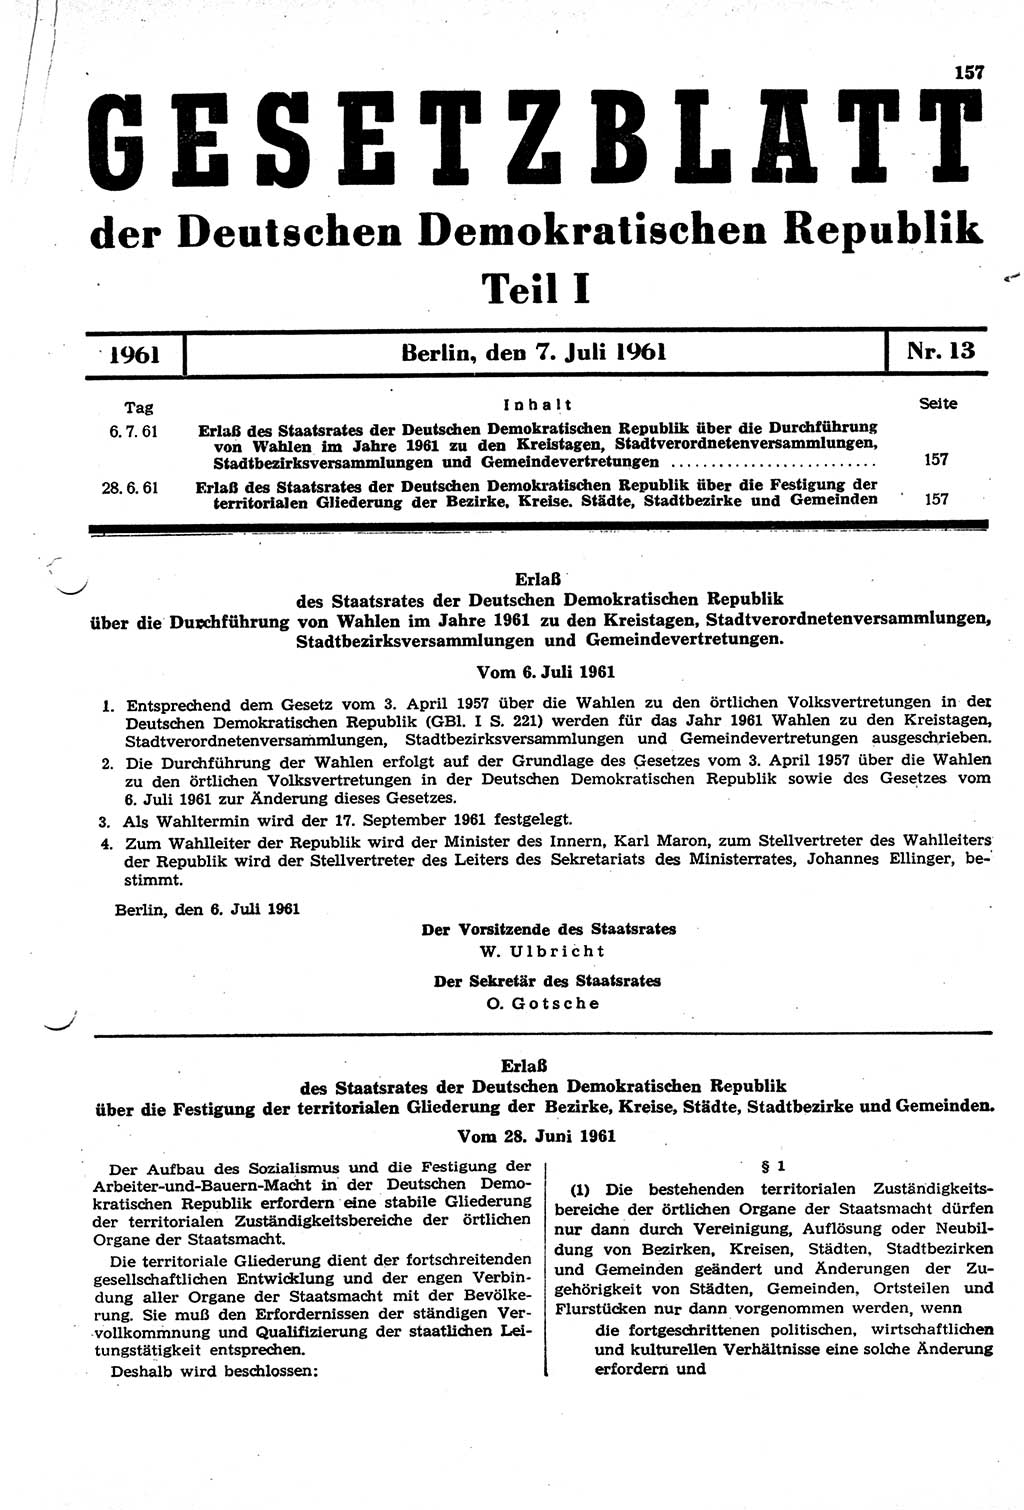 Gesetzblatt (GBl.) der Deutschen Demokratischen Republik (DDR) Teil Ⅰ 1961, Seite 157 (GBl. DDR Ⅰ 1961, S. 157)